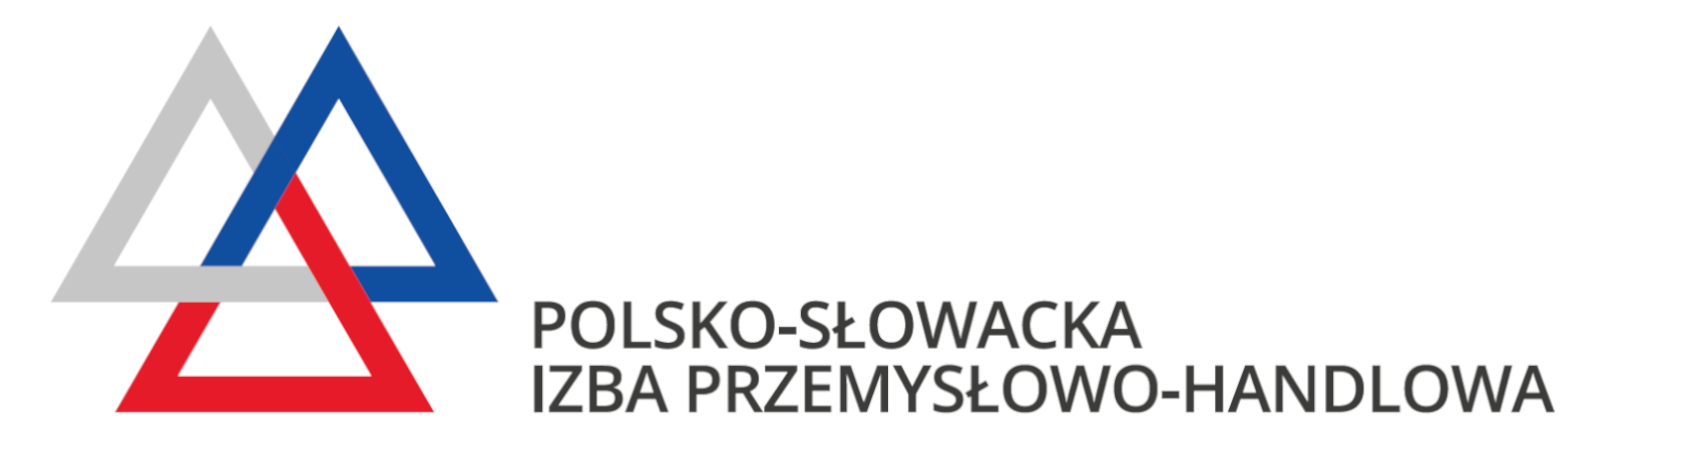 Polsko_Słowacka_Izba_Przemysłowo_Handlowa